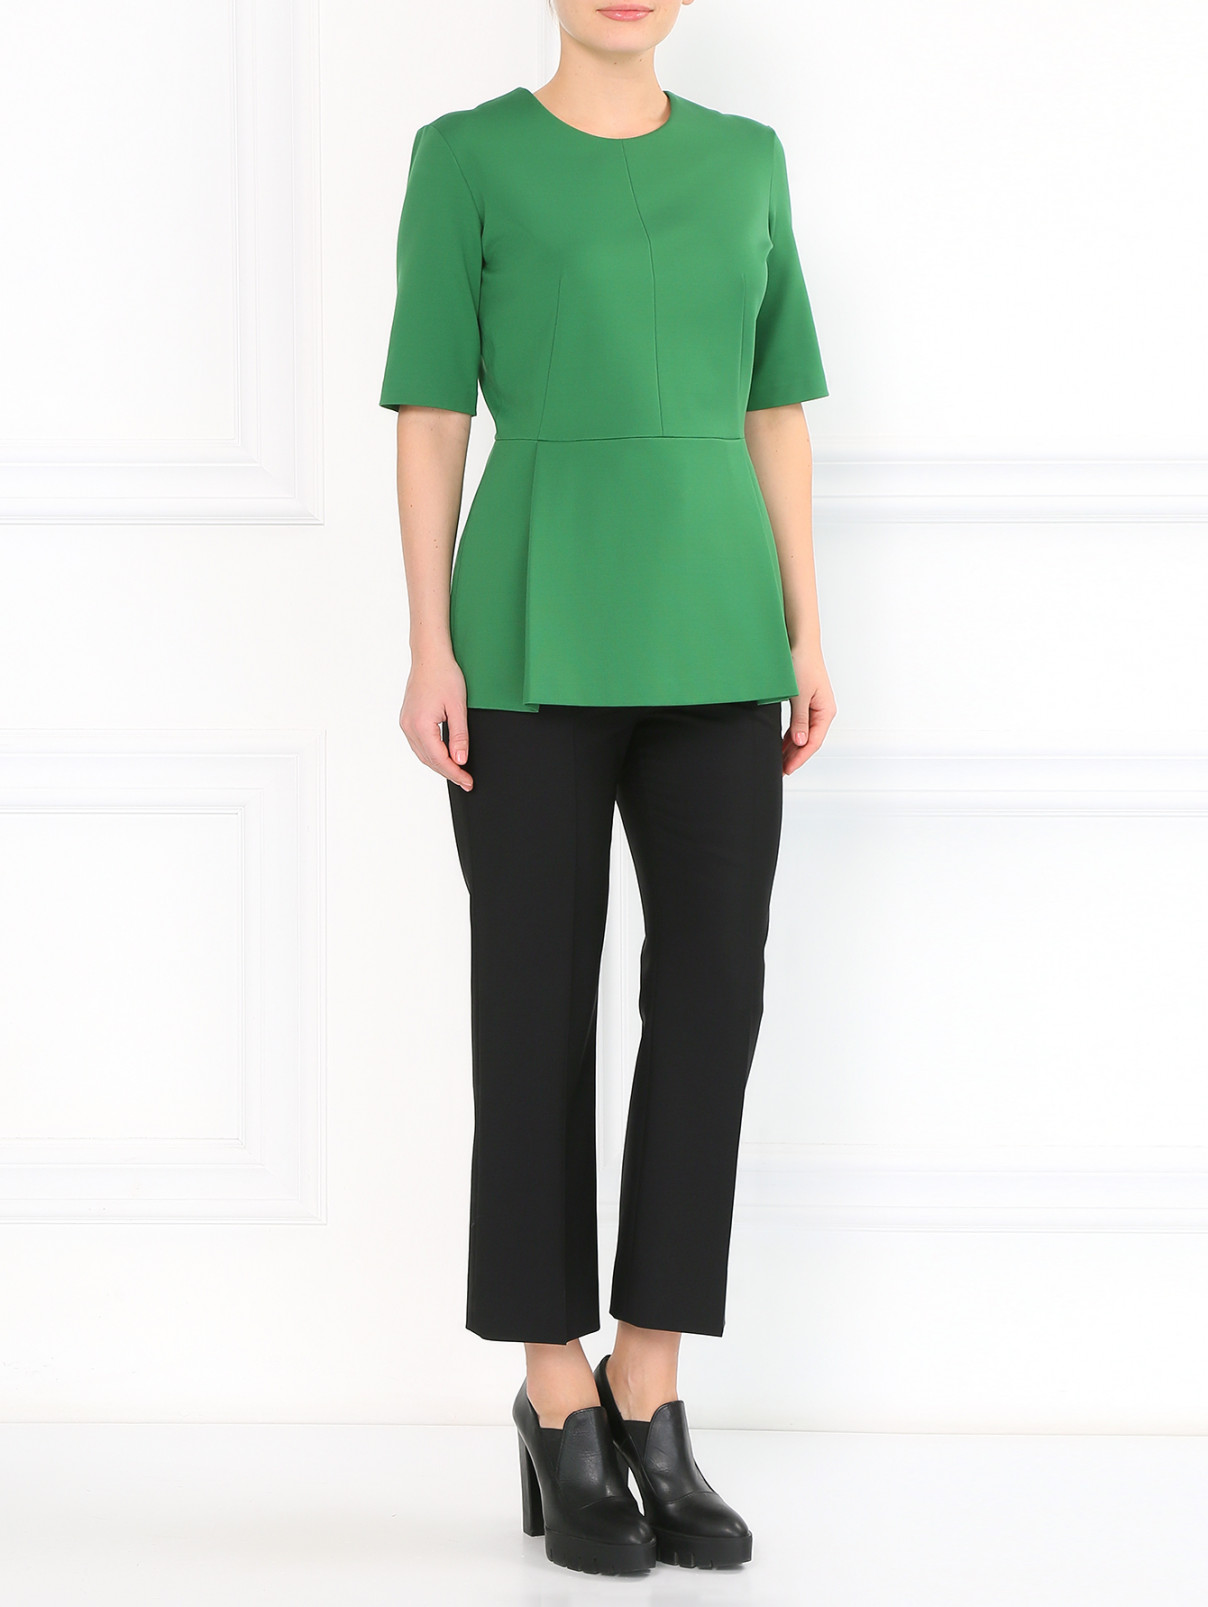 Блуза с баской Jil Sander  –  Модель Общий вид  – Цвет:  Зеленый